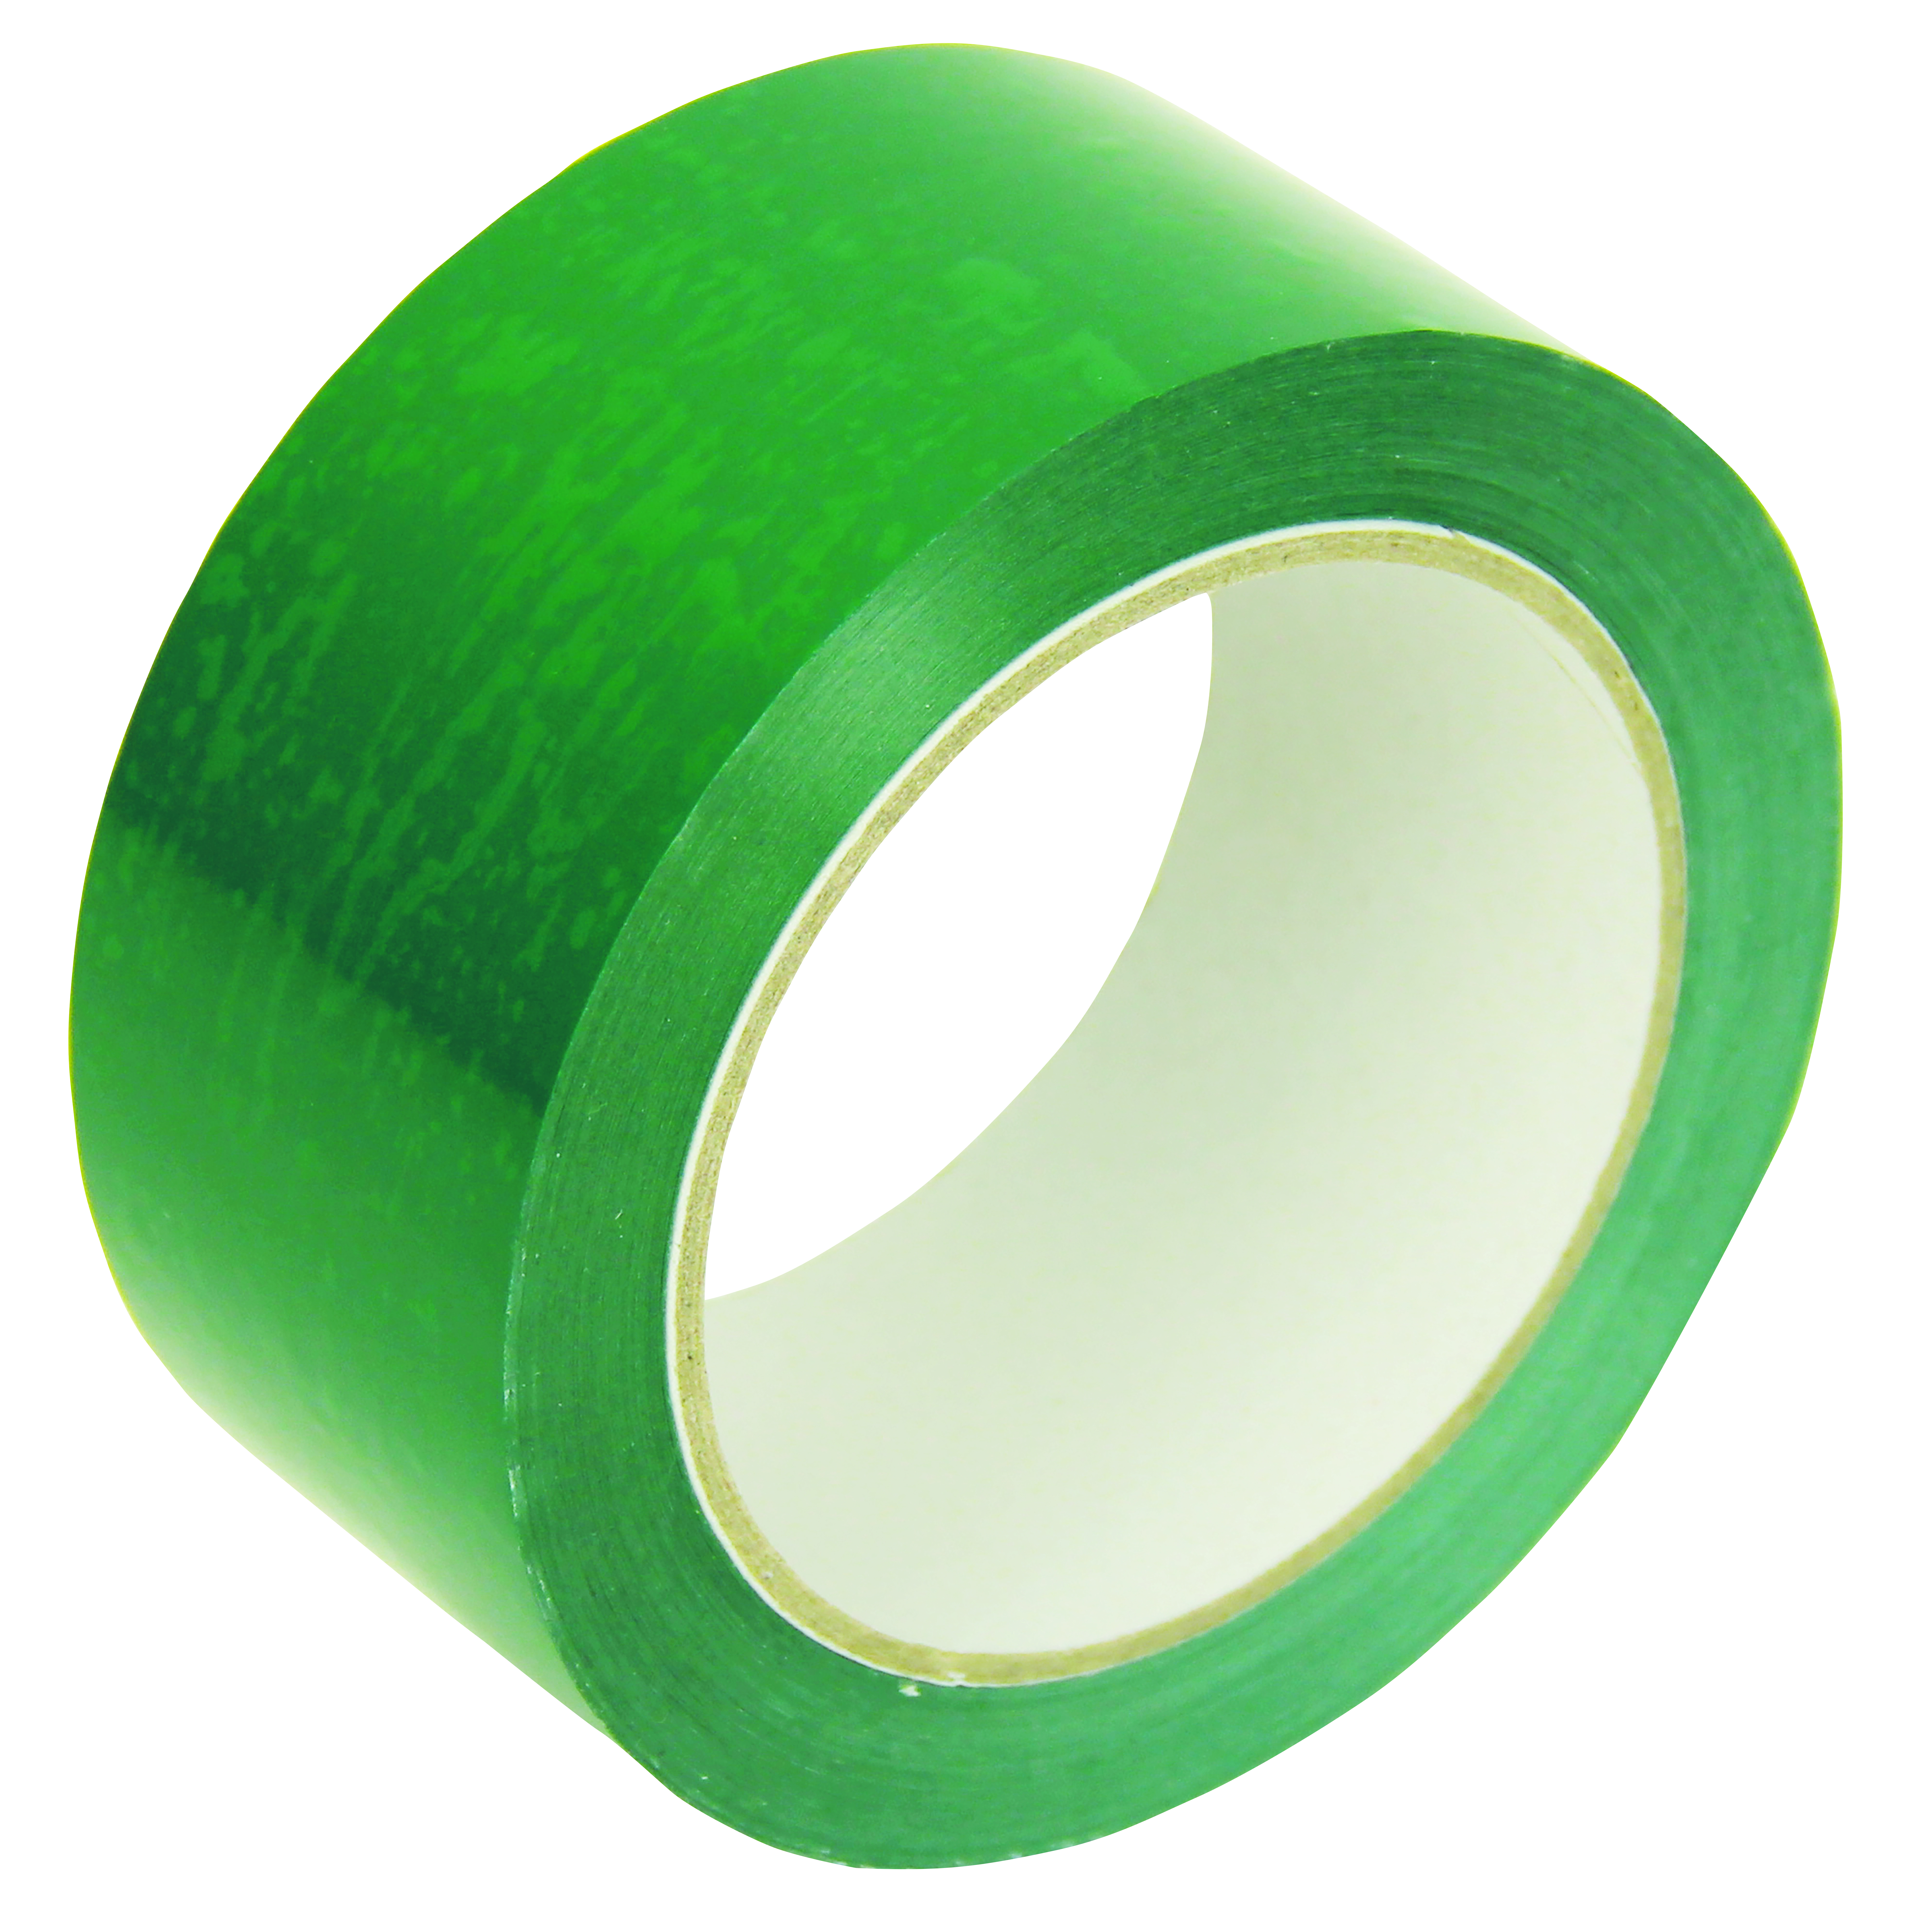 PVC High Quality gekleurd Zeer handig om uw verschillende collies of delen in uw magazijn te markeren.